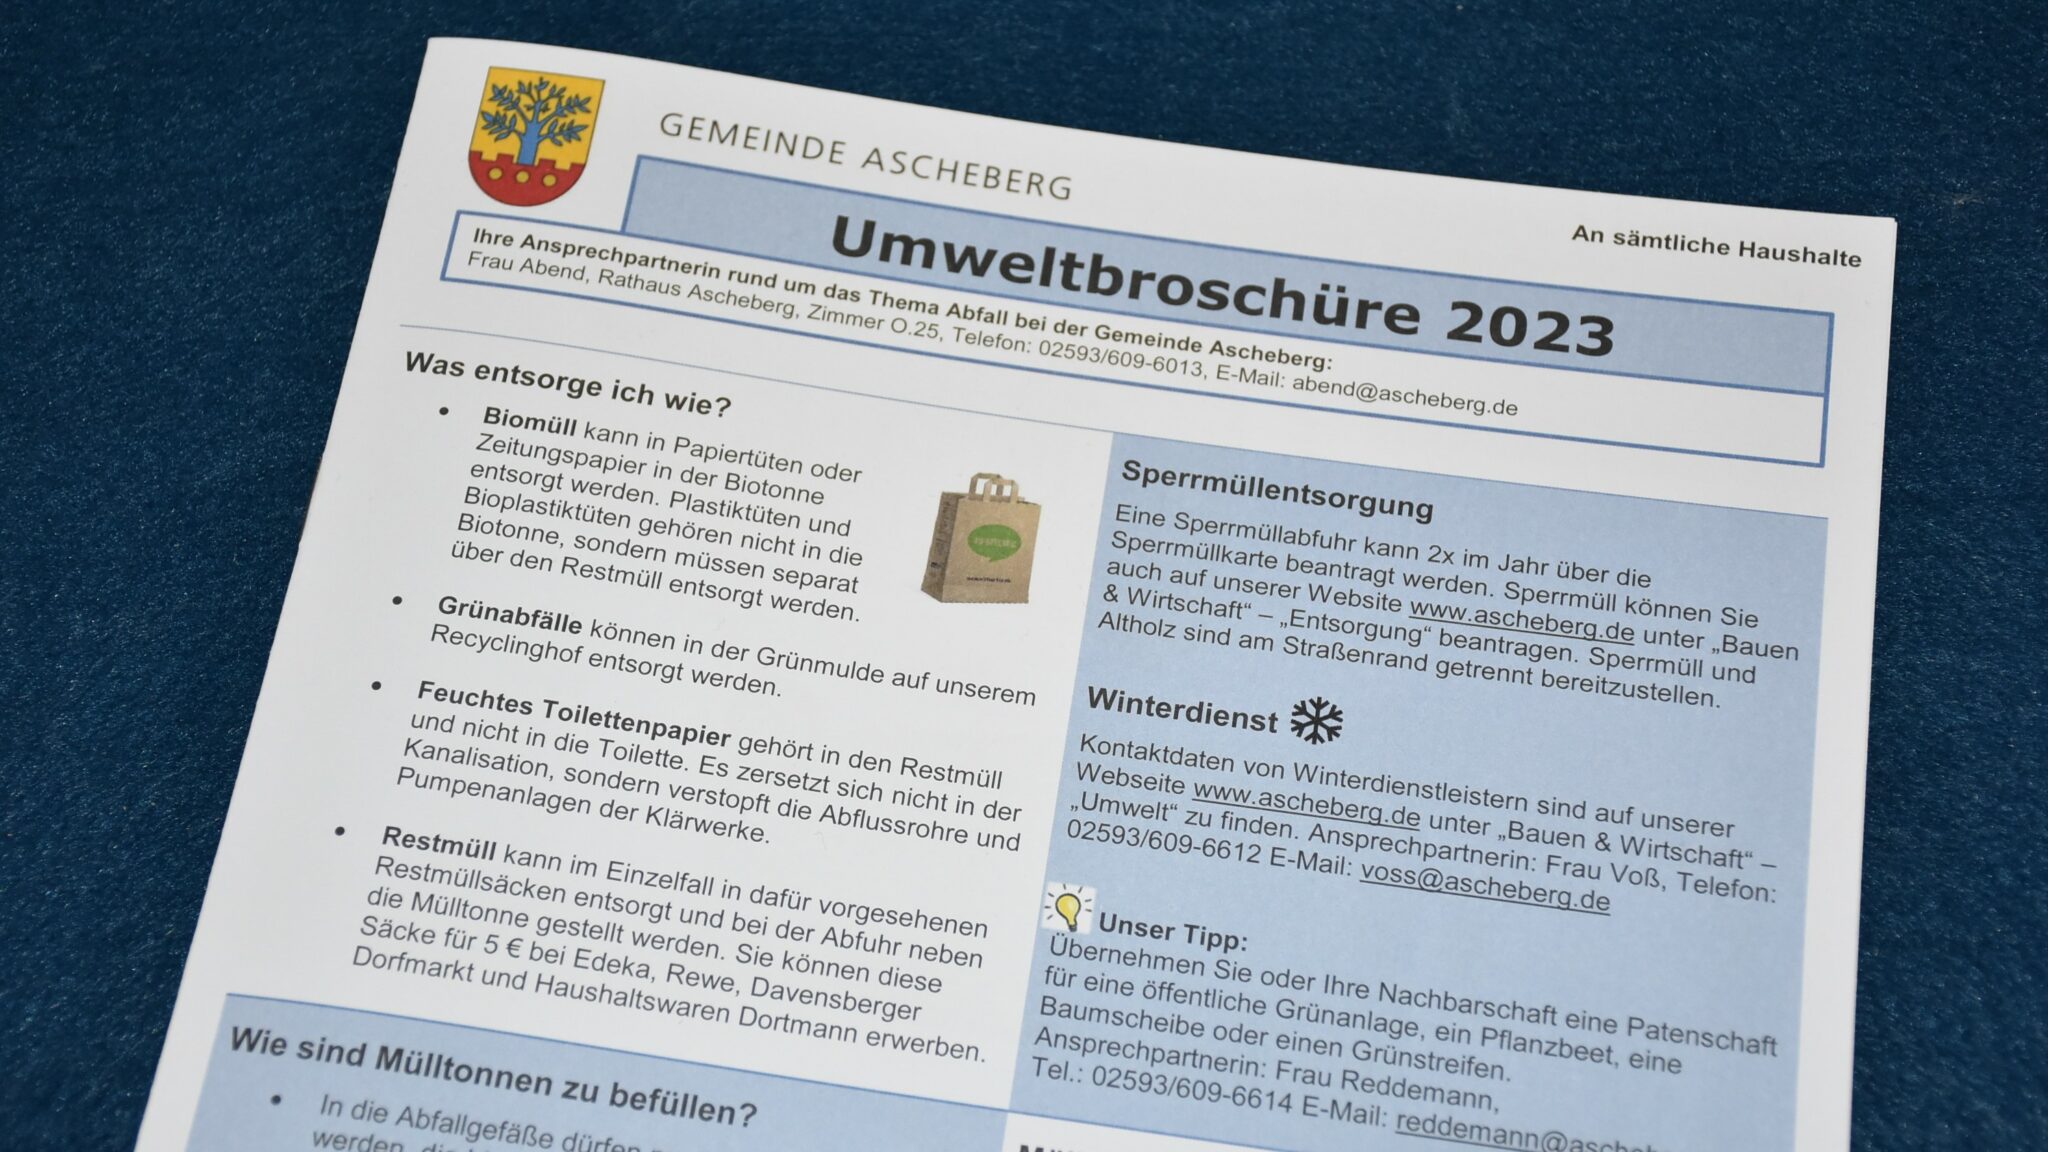 Umweltbroschüre 2023 Gemeinde Ascheberg